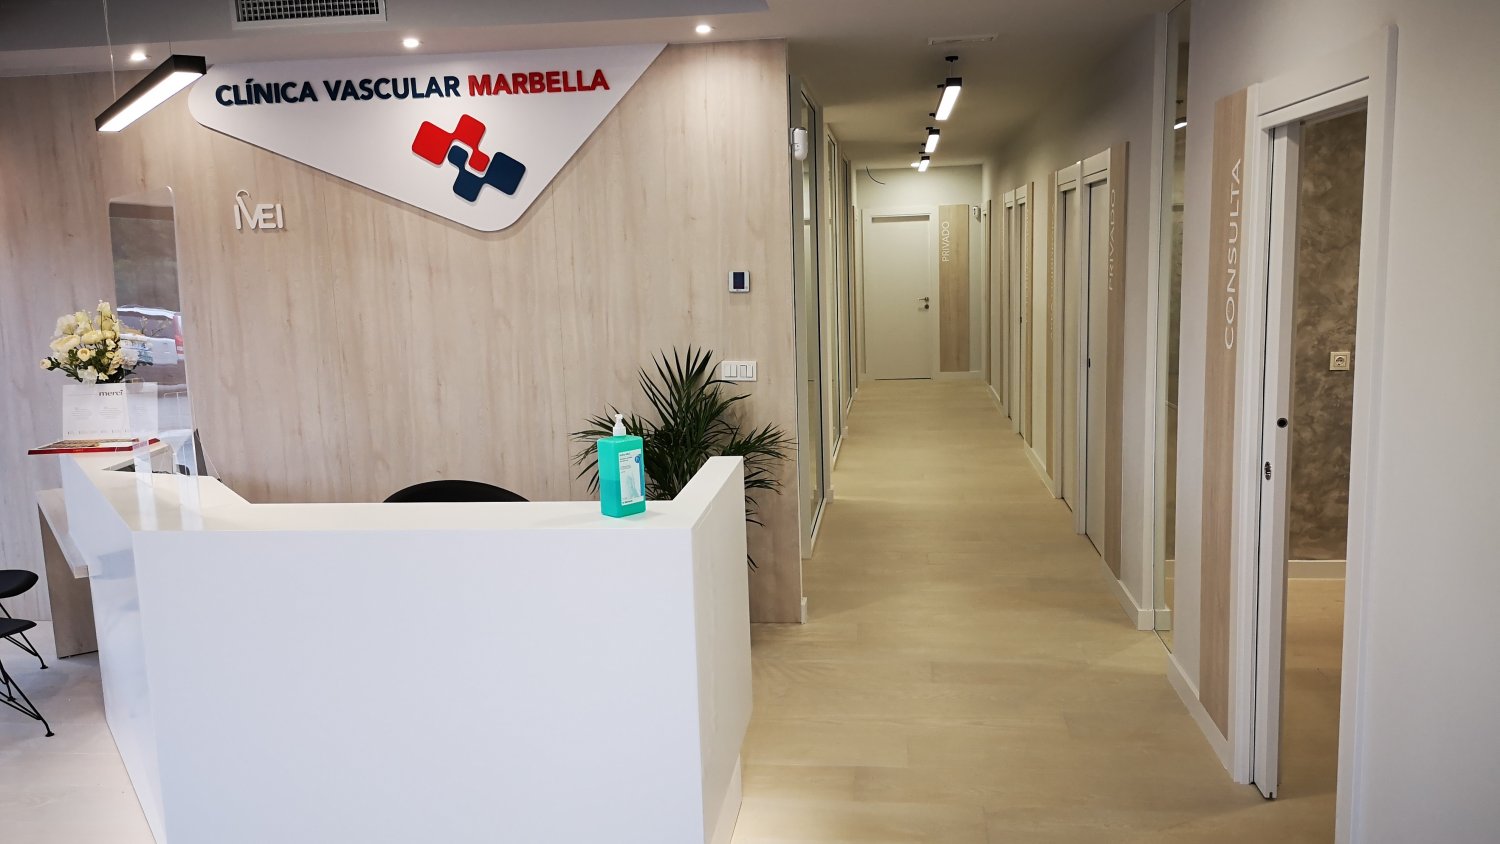 IVEI Cínica Vascular Marbella traslada sus instalaciones para mejorar sus servicios